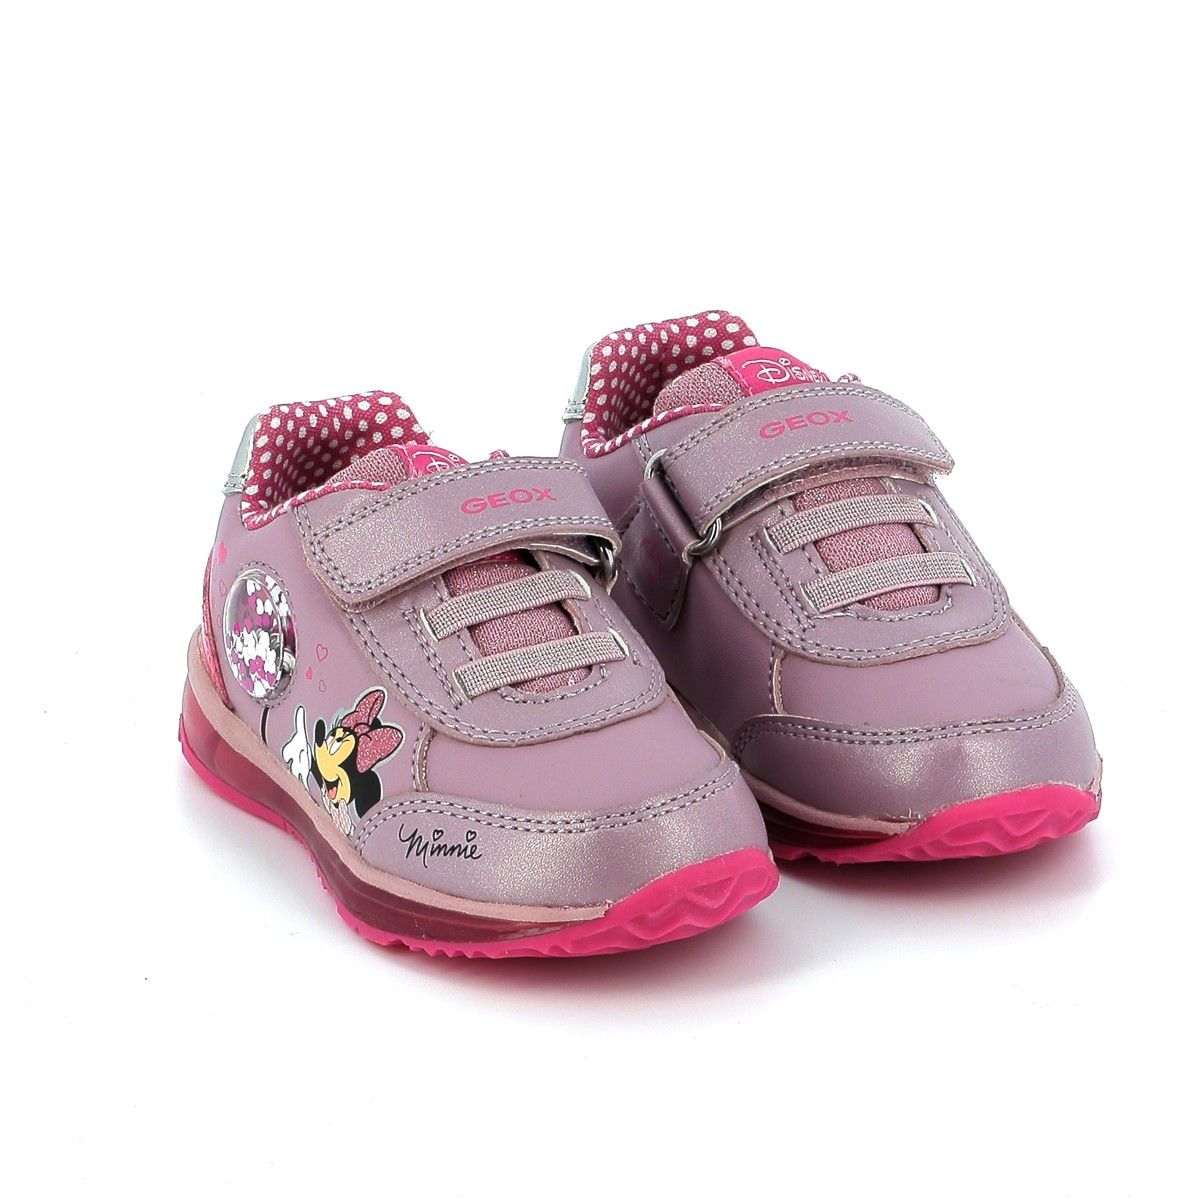 Παιδικό Αθλητικό Παπούτσι για Κορίτσι Ανατομικό με Φωτάκια Geox Minnie Χρώματος Ροζ B2685A 0NFKN C8J8N